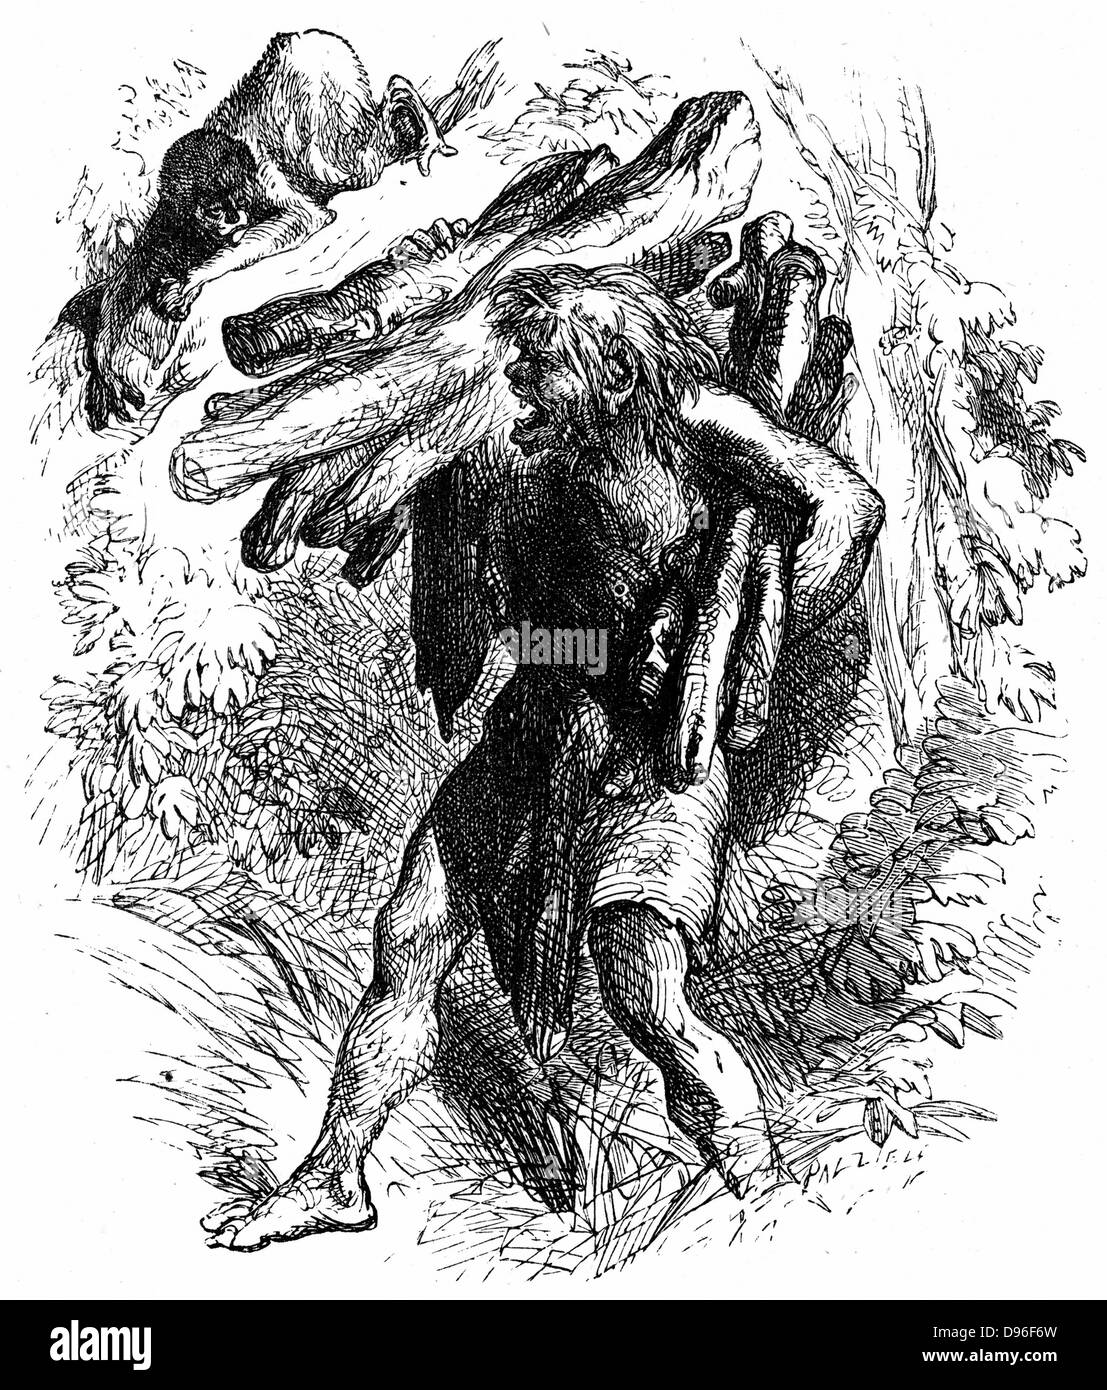 Caliban, der Wilde, verformt, Sub-menschliche Kreatur versklavt von Prospero. Act II Sc. II, Caliban Holz sammeln. Abbildung für "Der Sturm" für eine Edition von Shakespeares Werke veröffentlicht 1856-1858. Gravur. Stockfoto